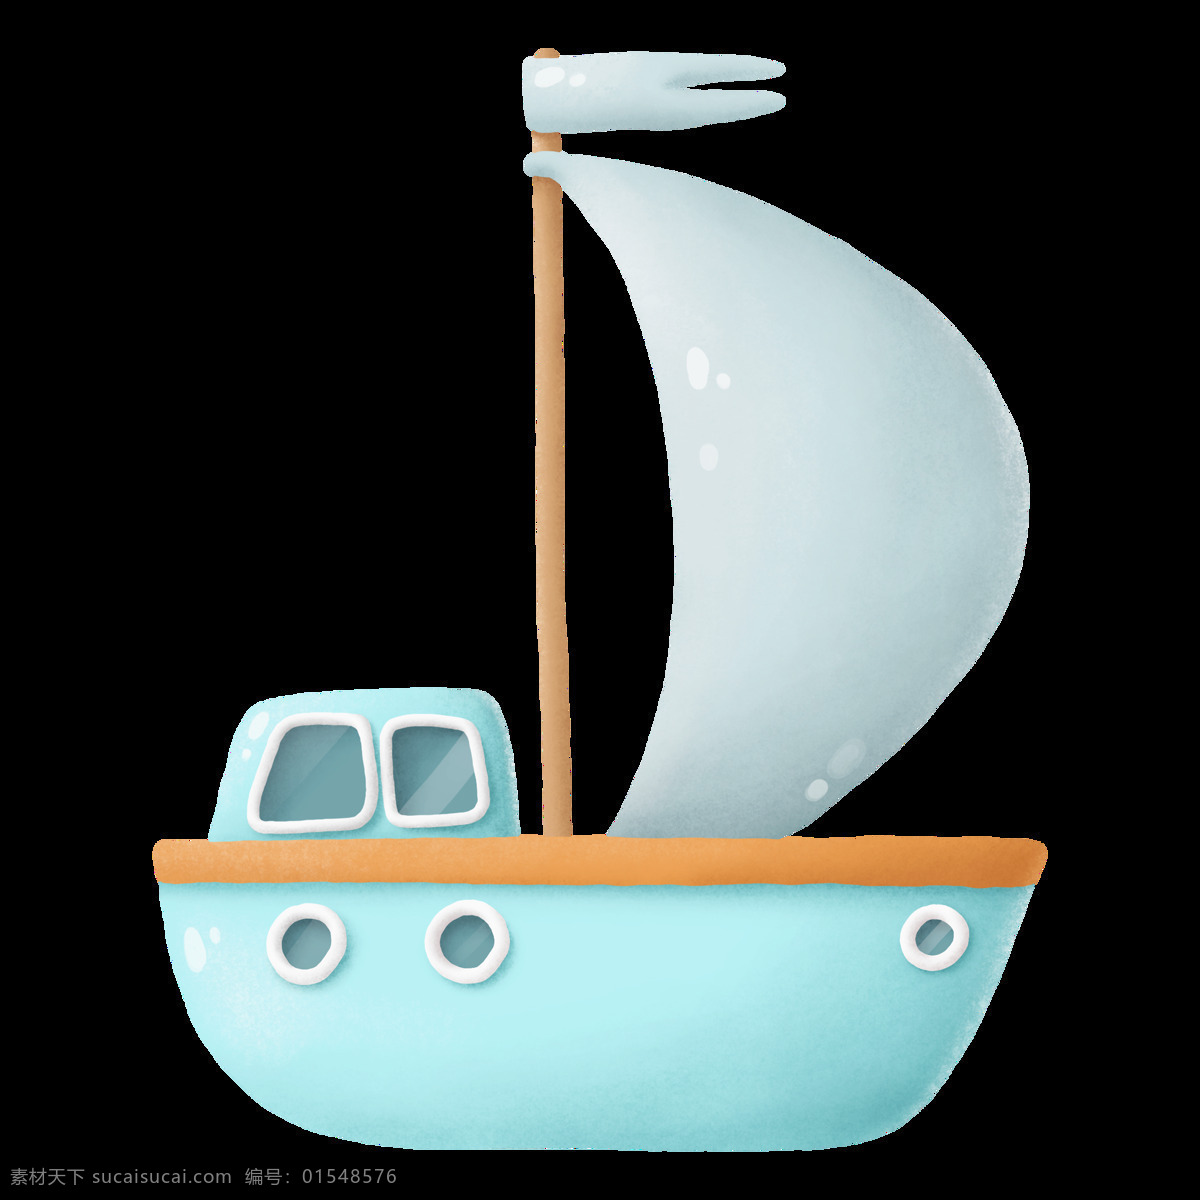 小船 船舵 船舱 帆船 卡通小船 插画 手绘 简笔画 晓雪设计 卡通插画 艺术插画 抽象插画 动漫动画